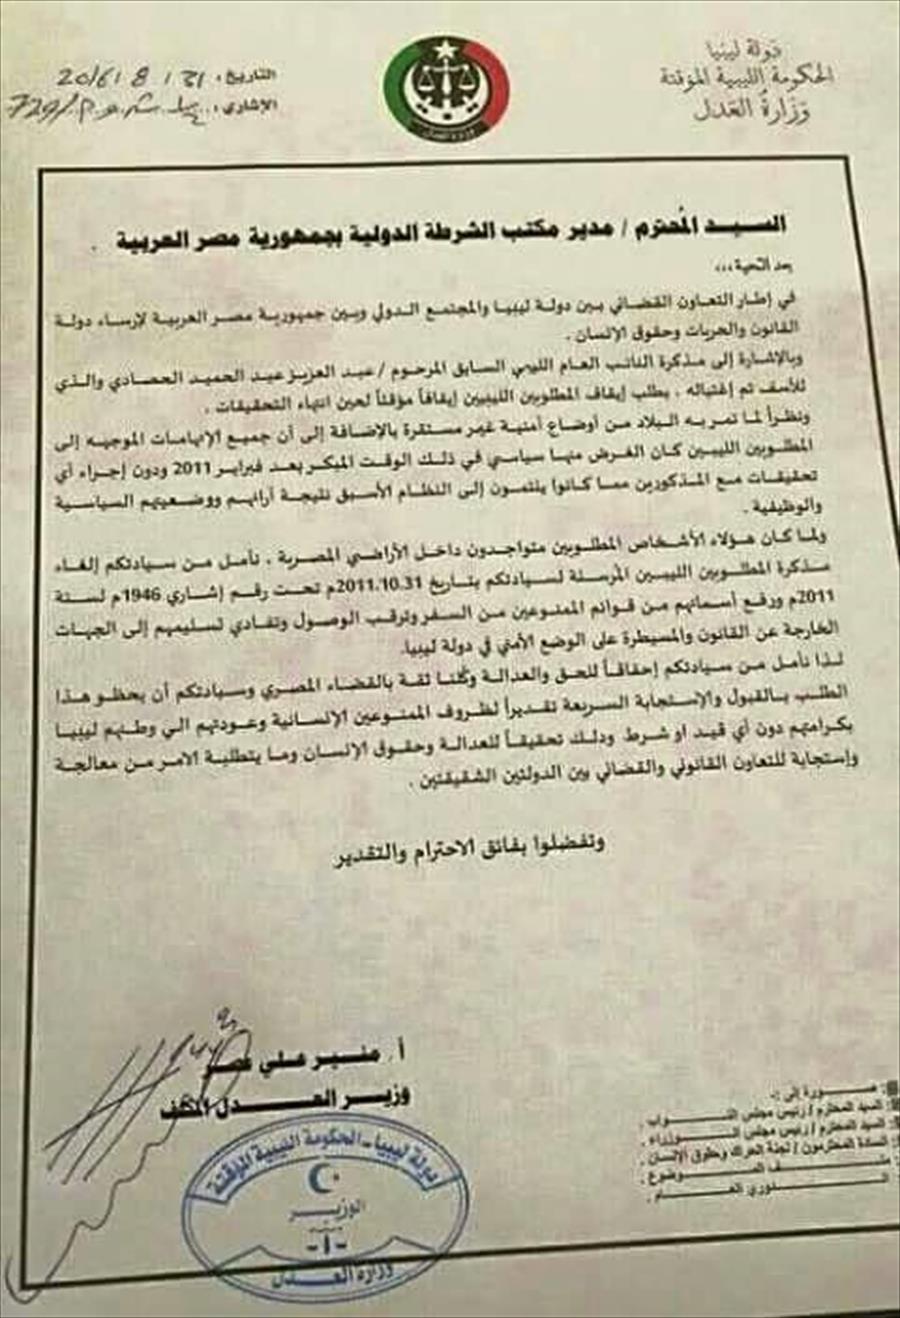 «عدل الموقتة» يطالب بإلغاء مذكرة المطلوبين من مسؤولي نظام القذافي بمصر